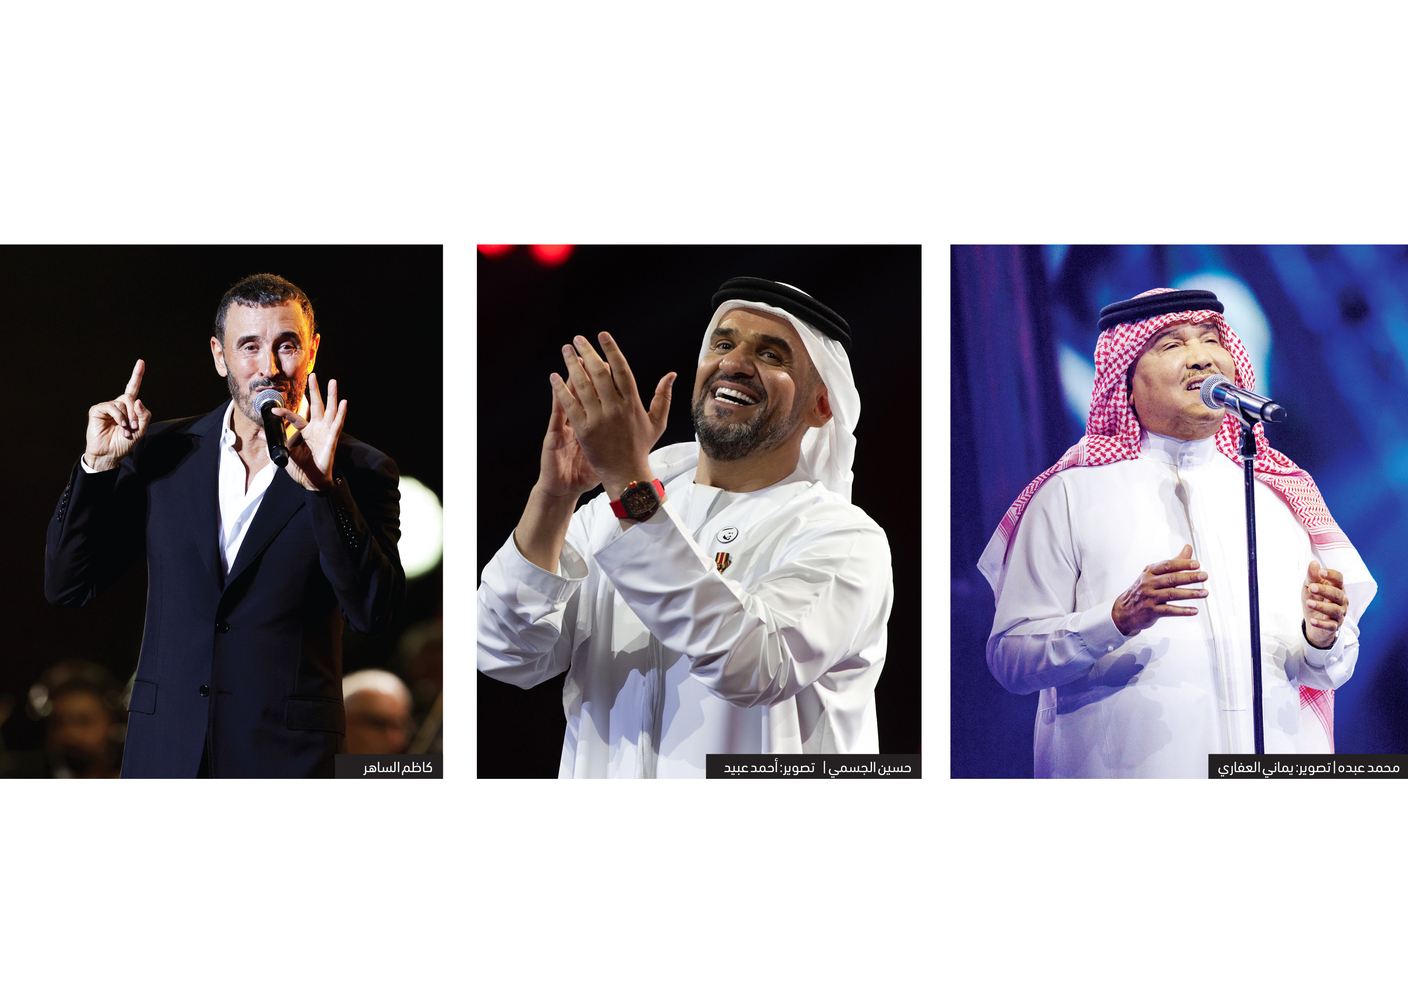 دبي تجمع روائع نجوم العالم العربي